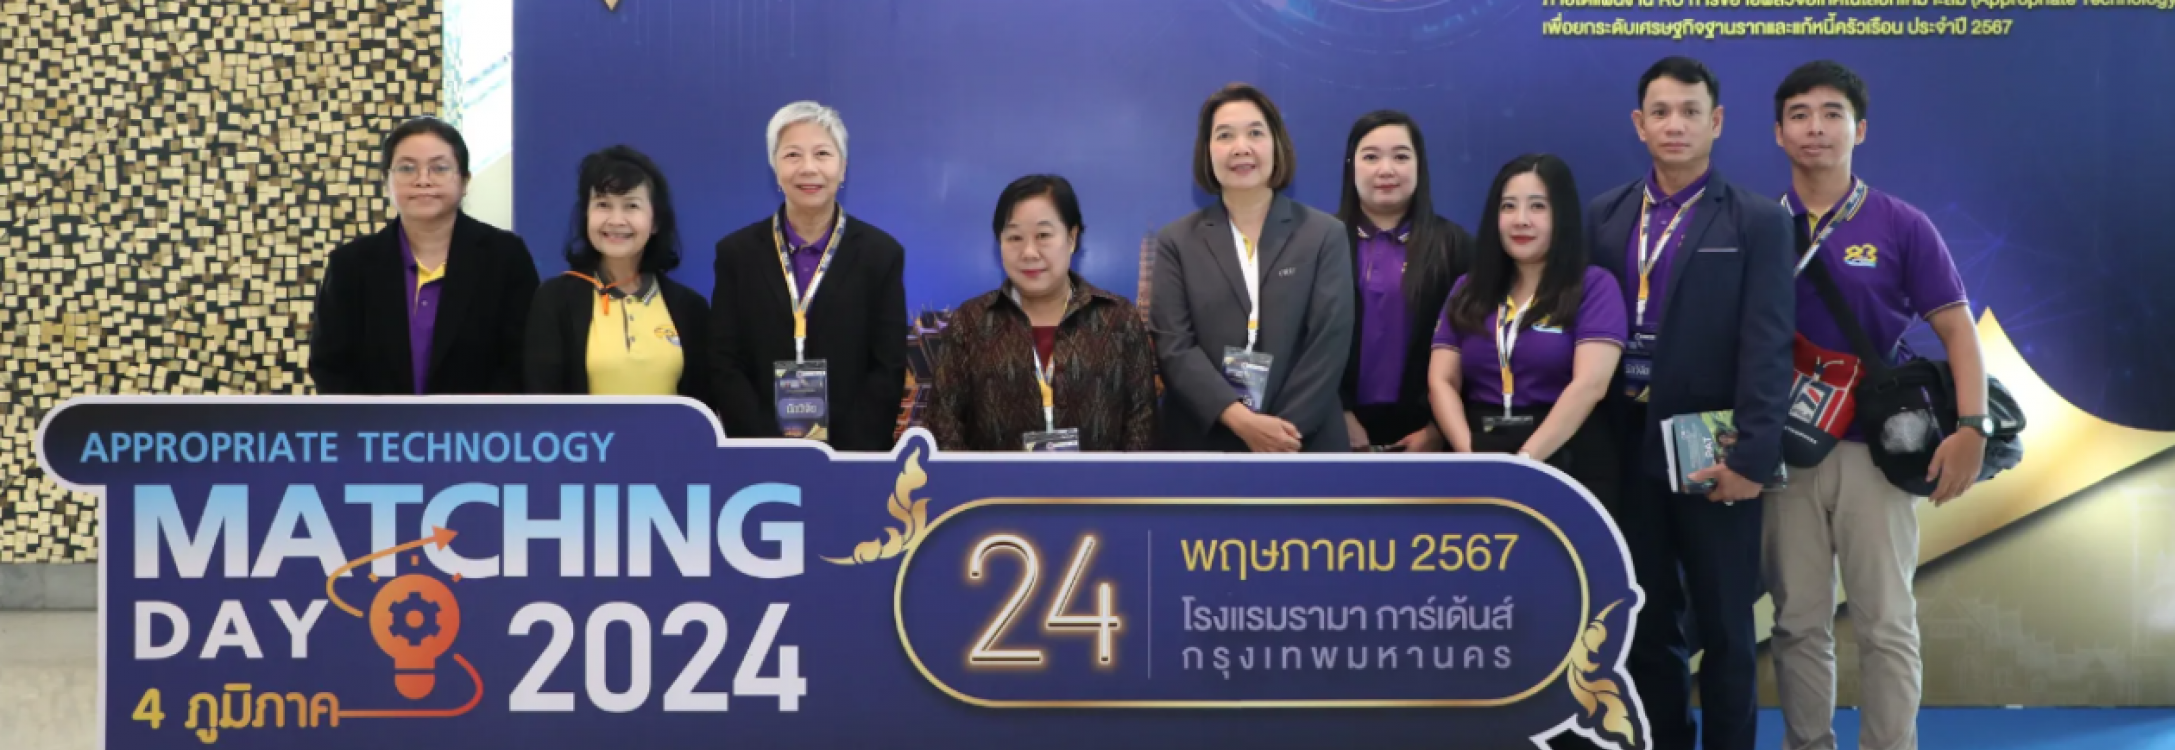 ร่วมกิจกรรม Appropriate Technology Matching Day 2024 “เทคโนโลยีพร้อมใช้ เพื่อชุมชนไทยยั่งยืน”